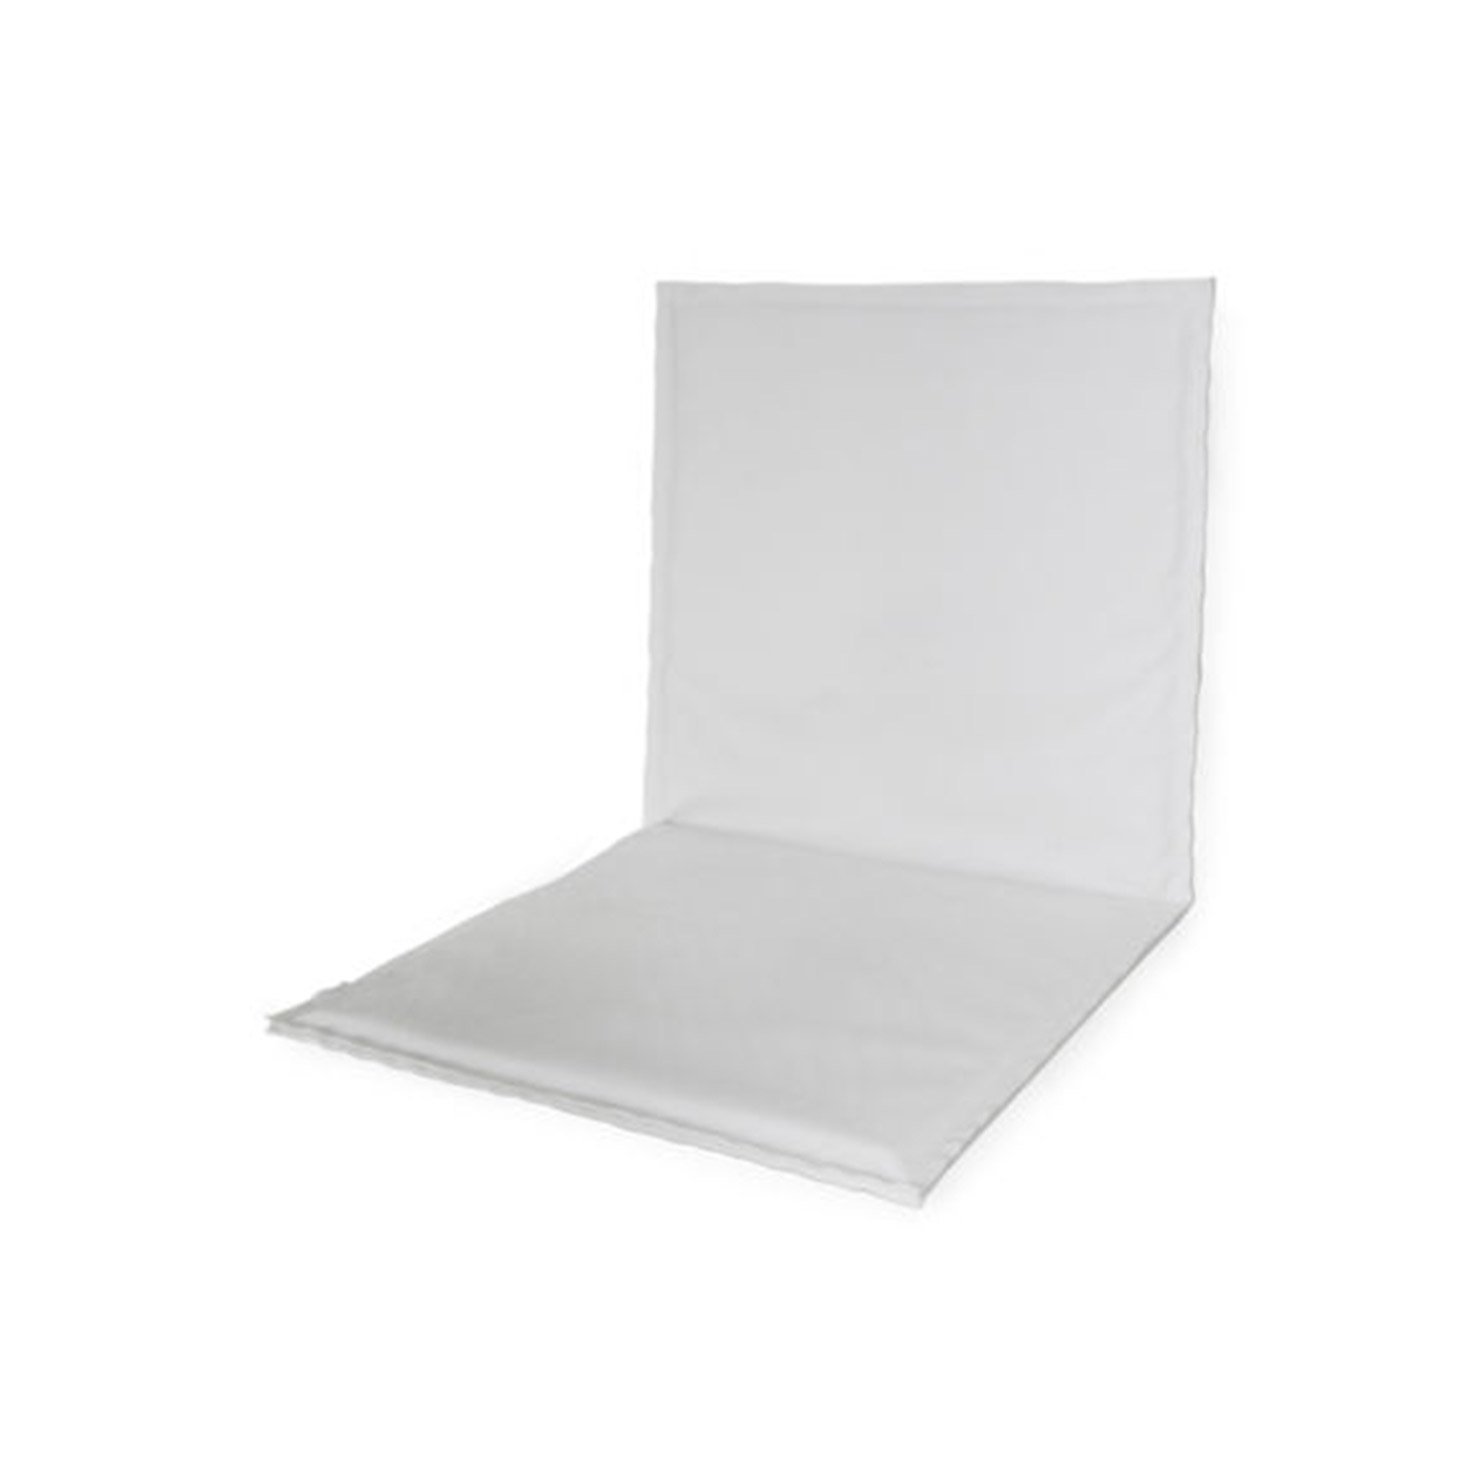 μαξιλάρι από λευκό δέρμα - συσκευασία 2 τεμαχίων